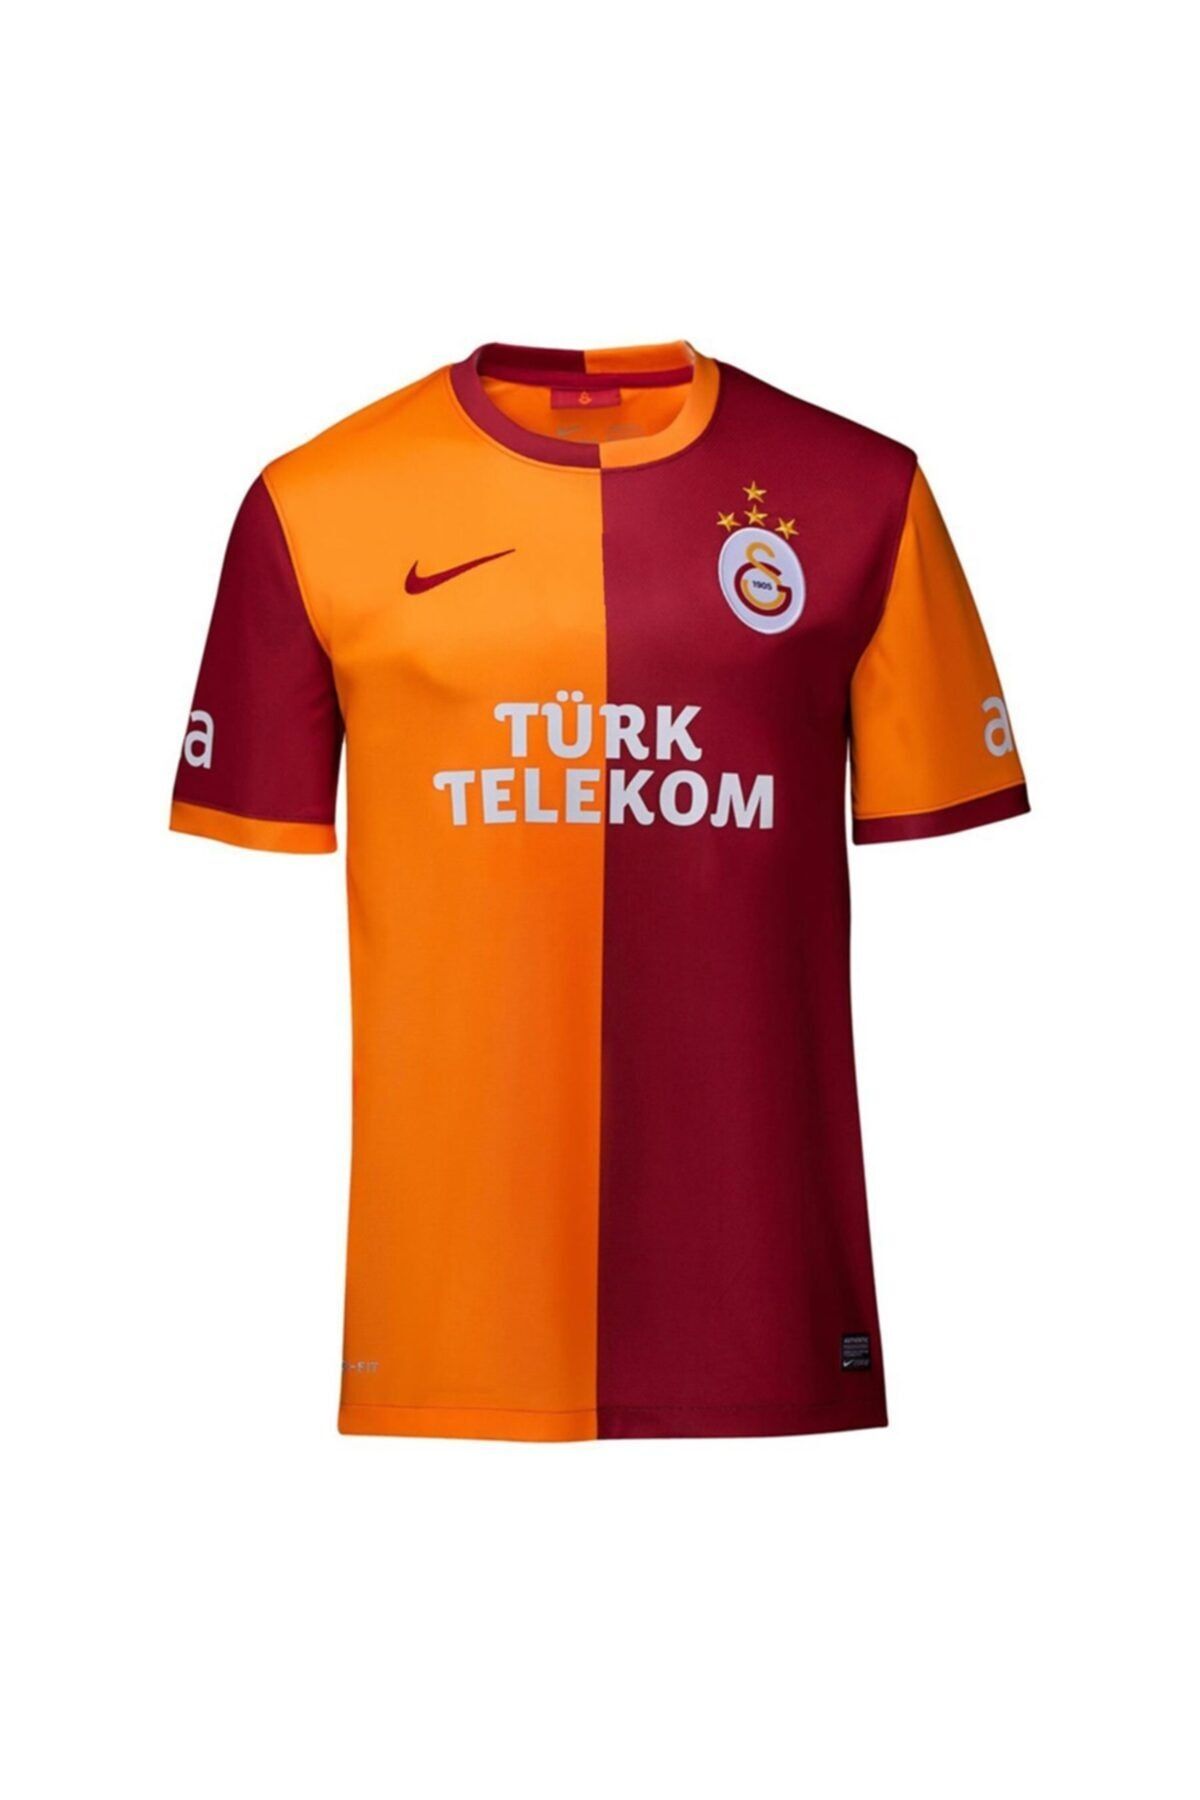 Galatasaray Orjinal Parçalı Çocuk Forma 2013-2014 Sezonu 4 Yıldızlı Çocuk Forma